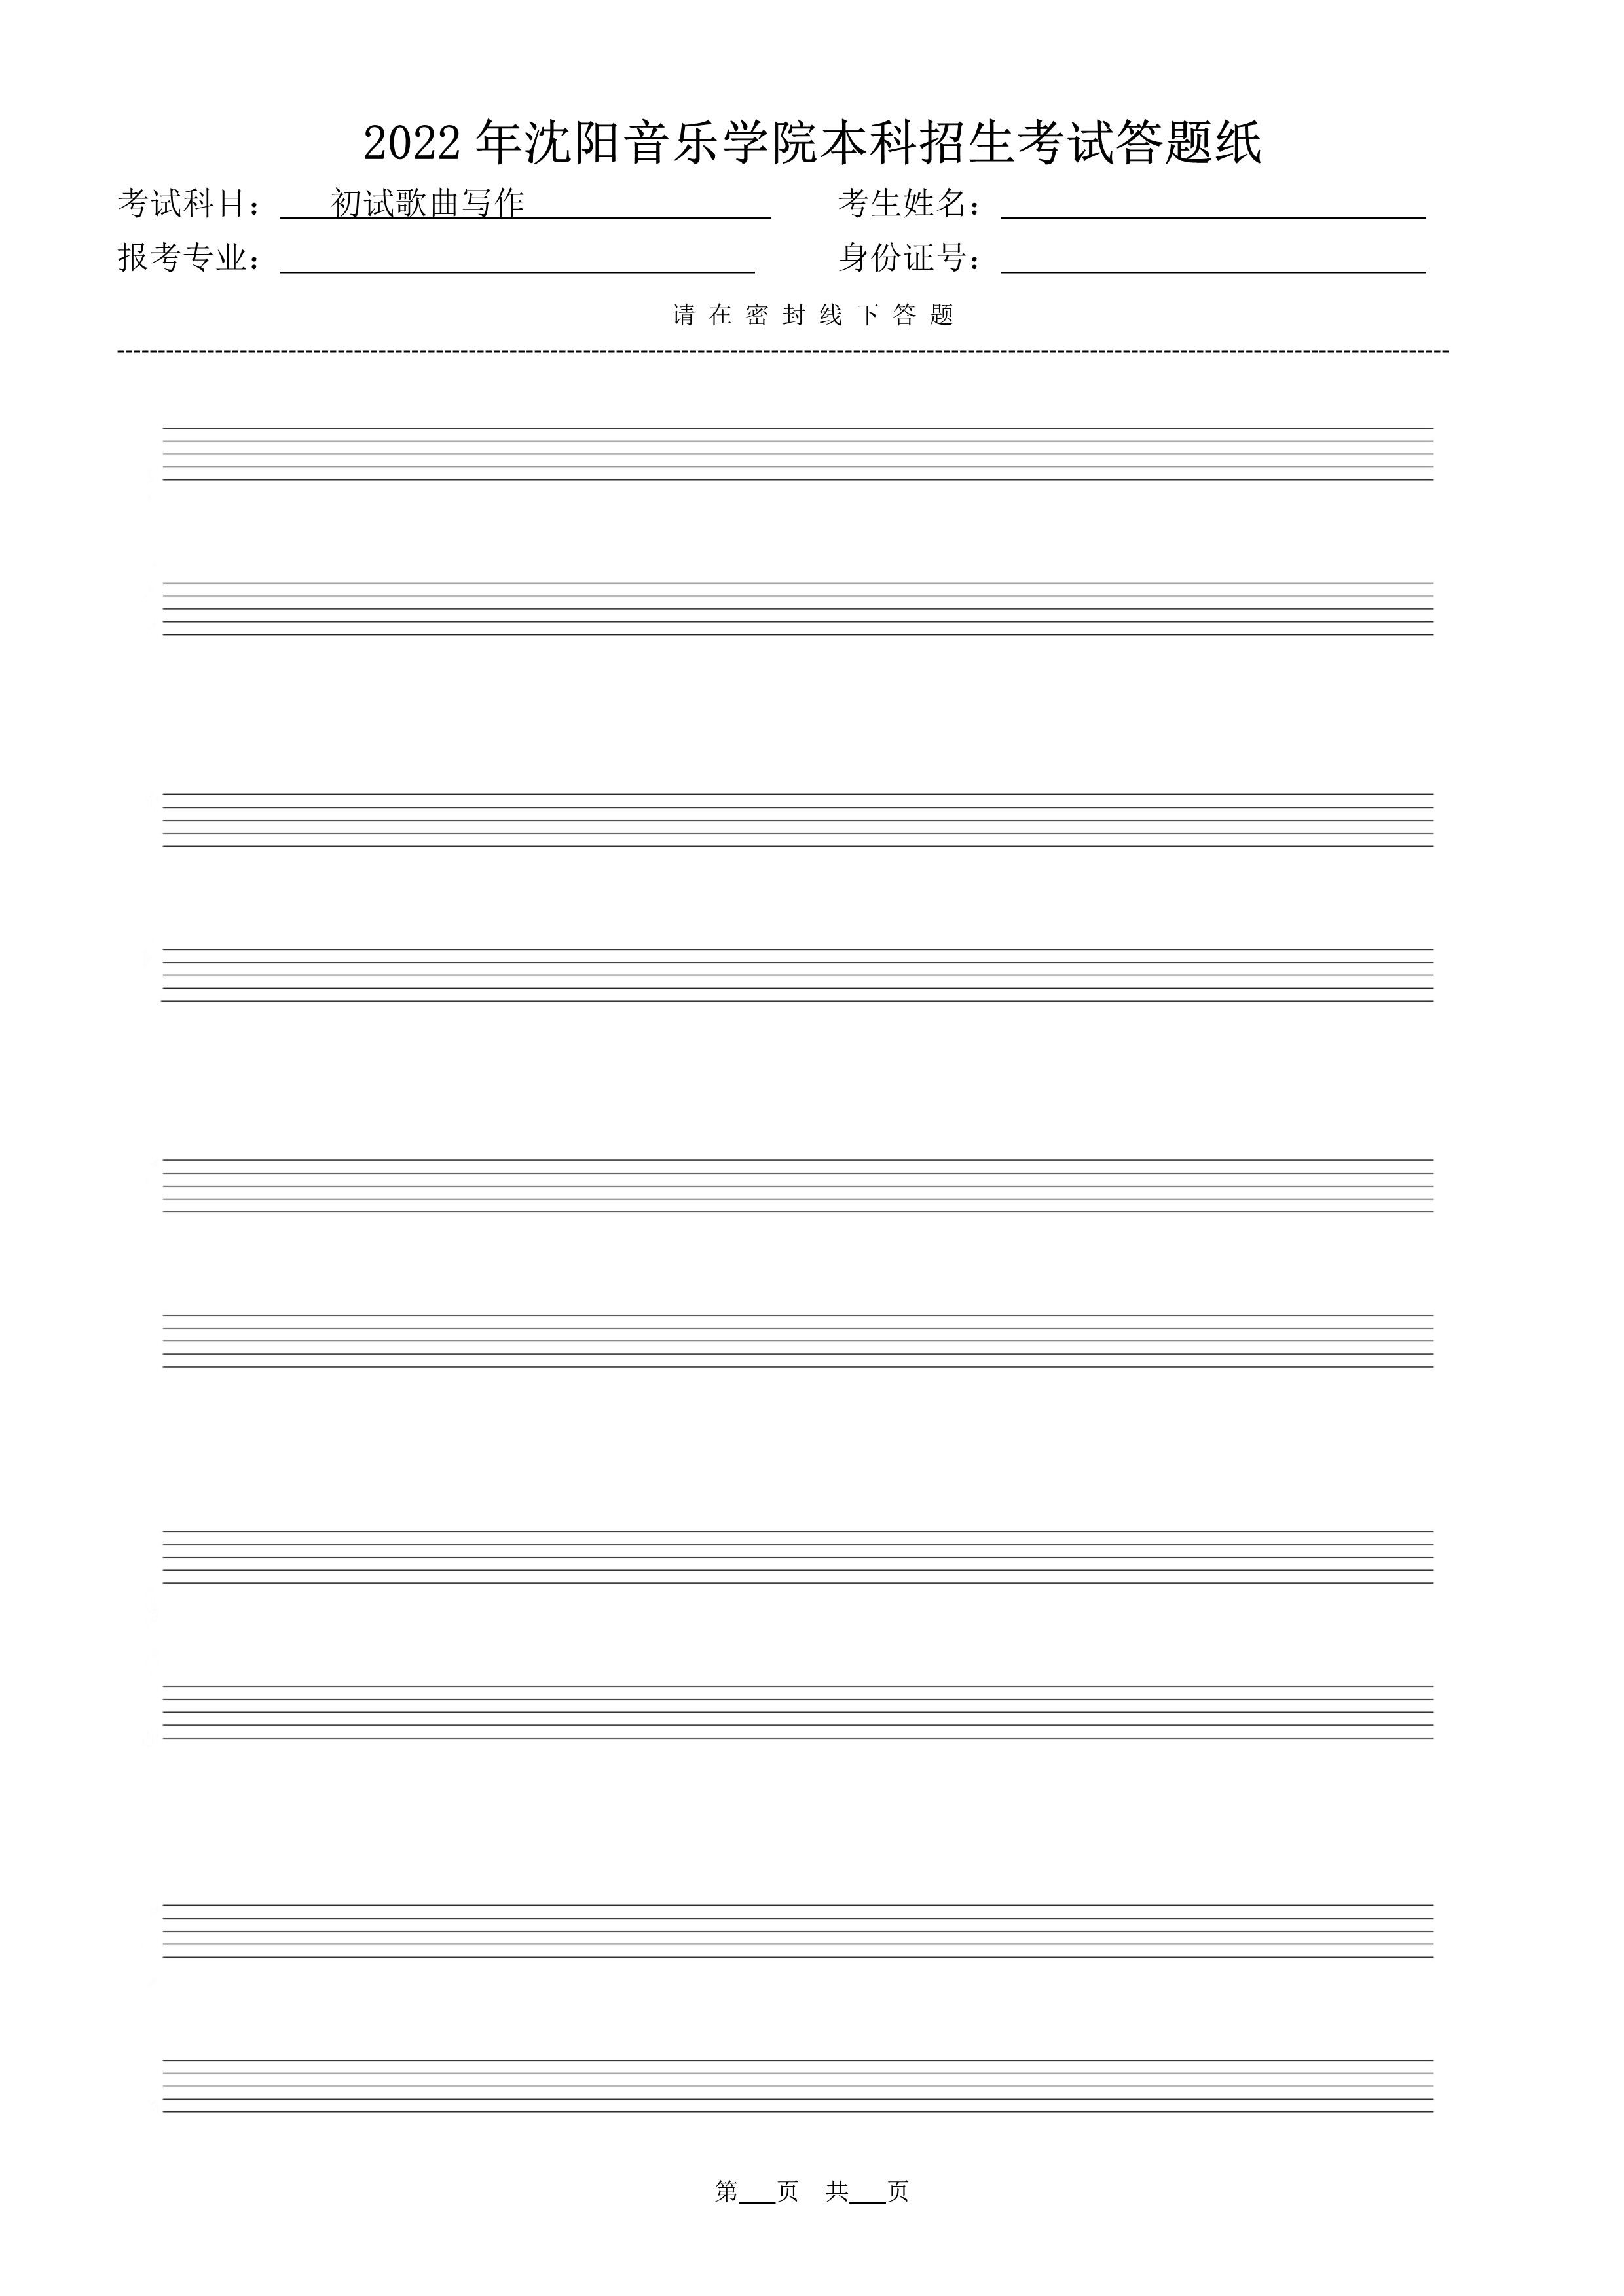 初试歌曲写作答题纸（共5页）_4.jpg